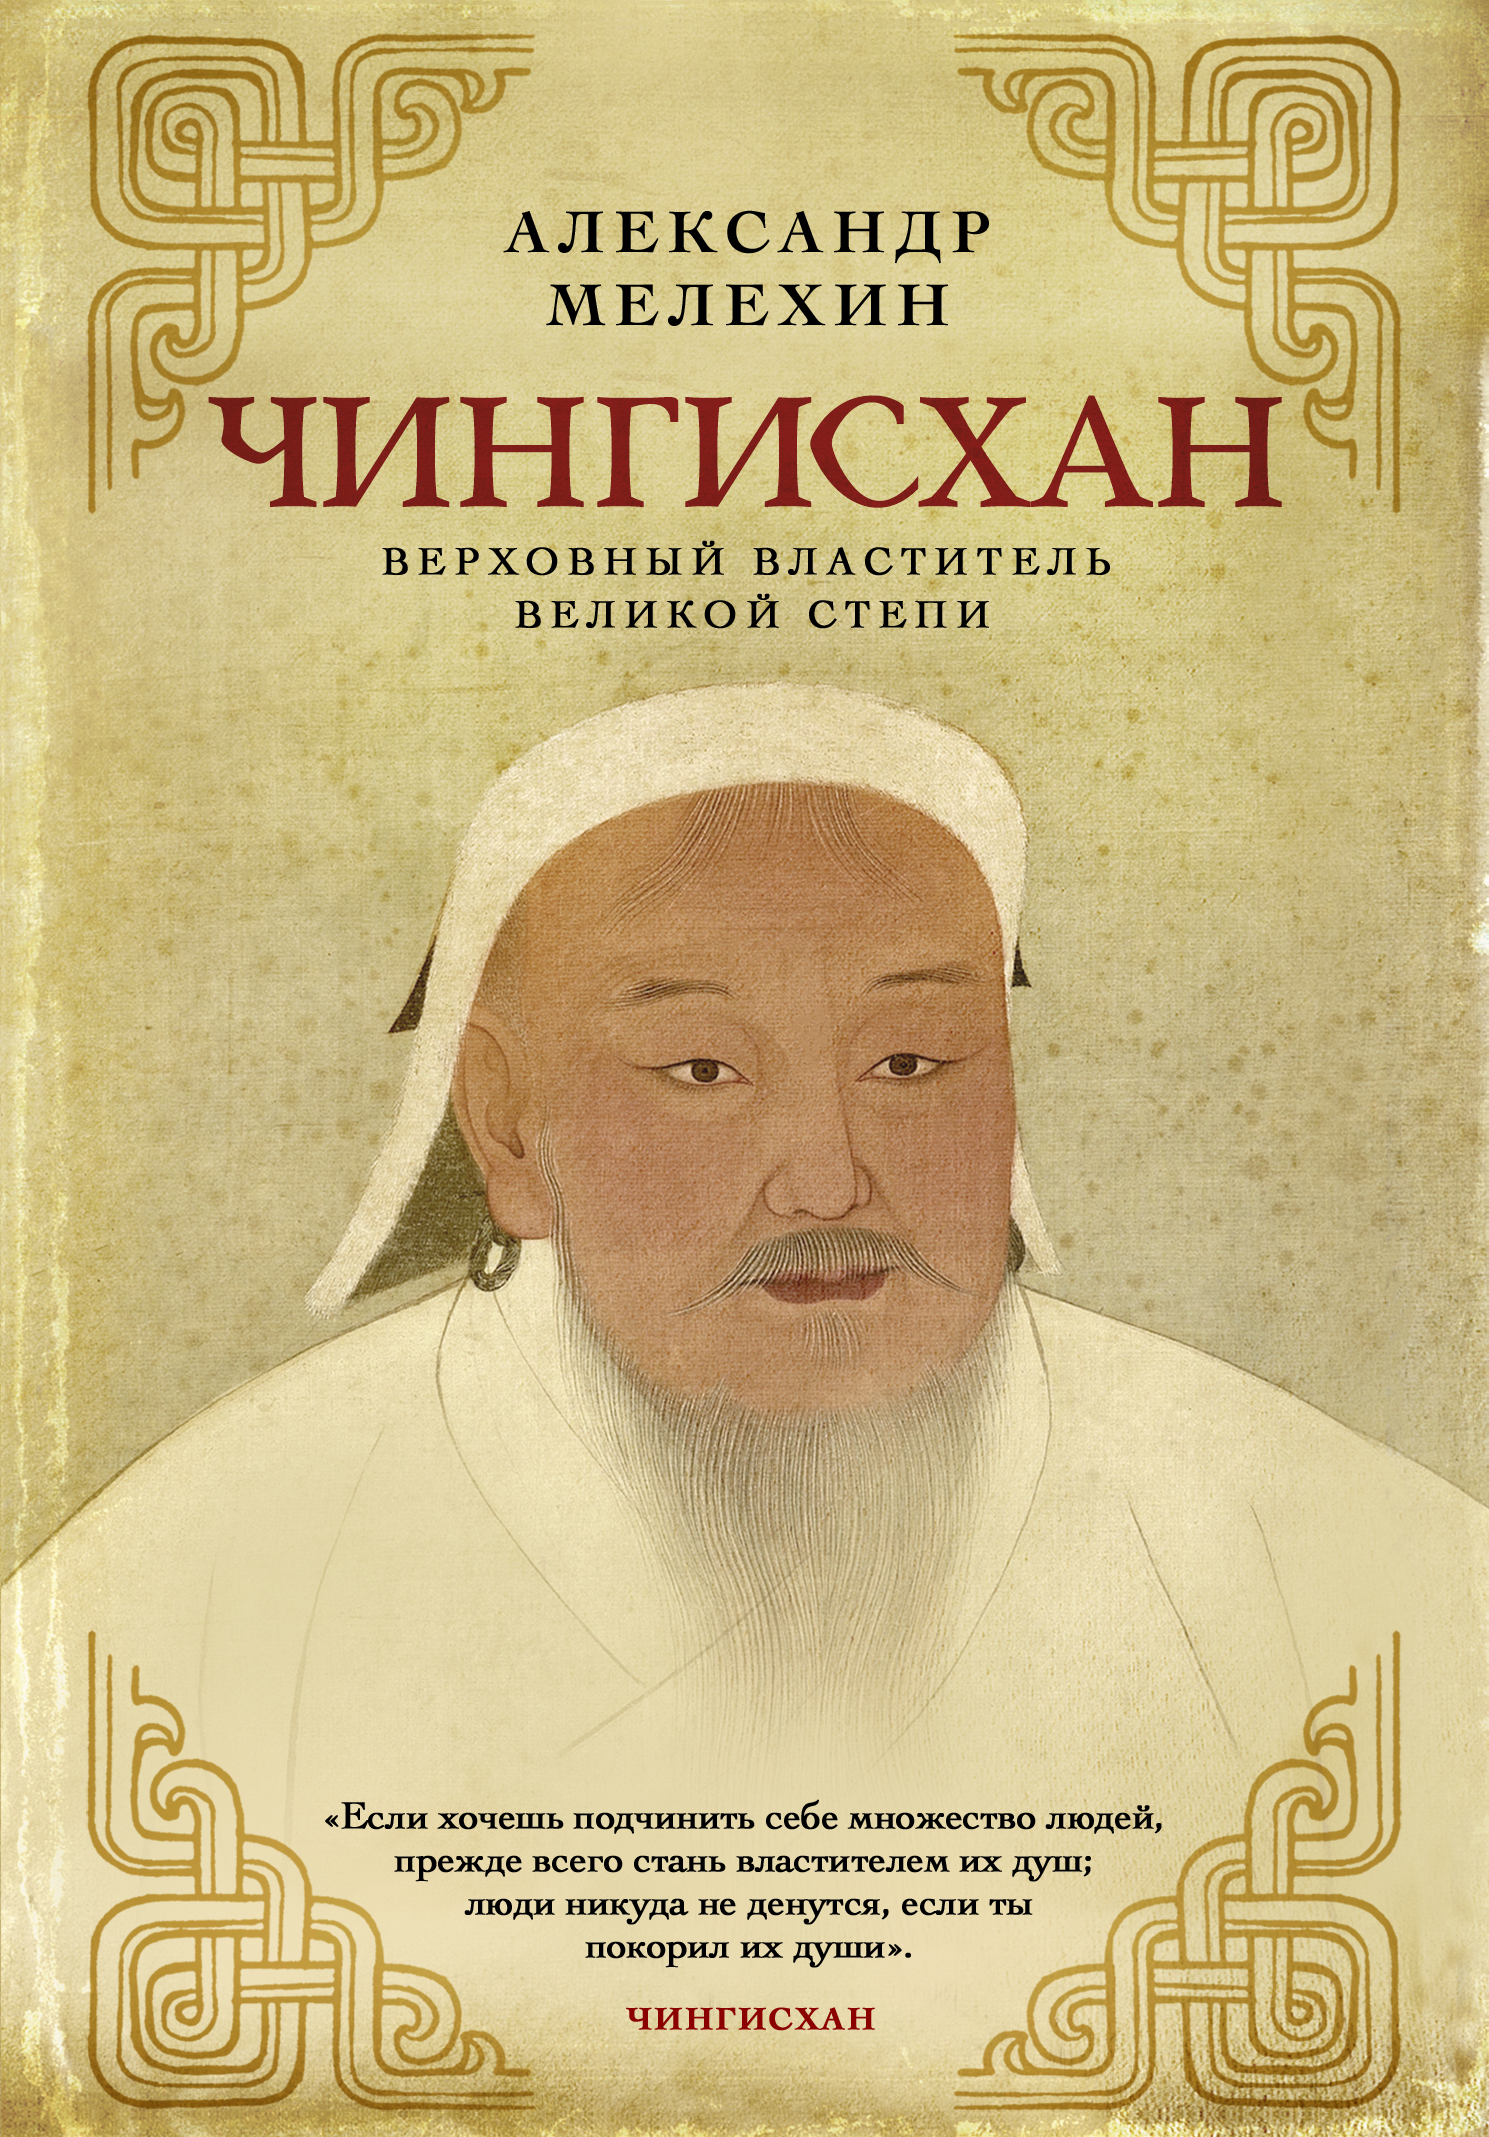 Мелехин А.В. Чингисхан. Верховный властитель Великой степи 